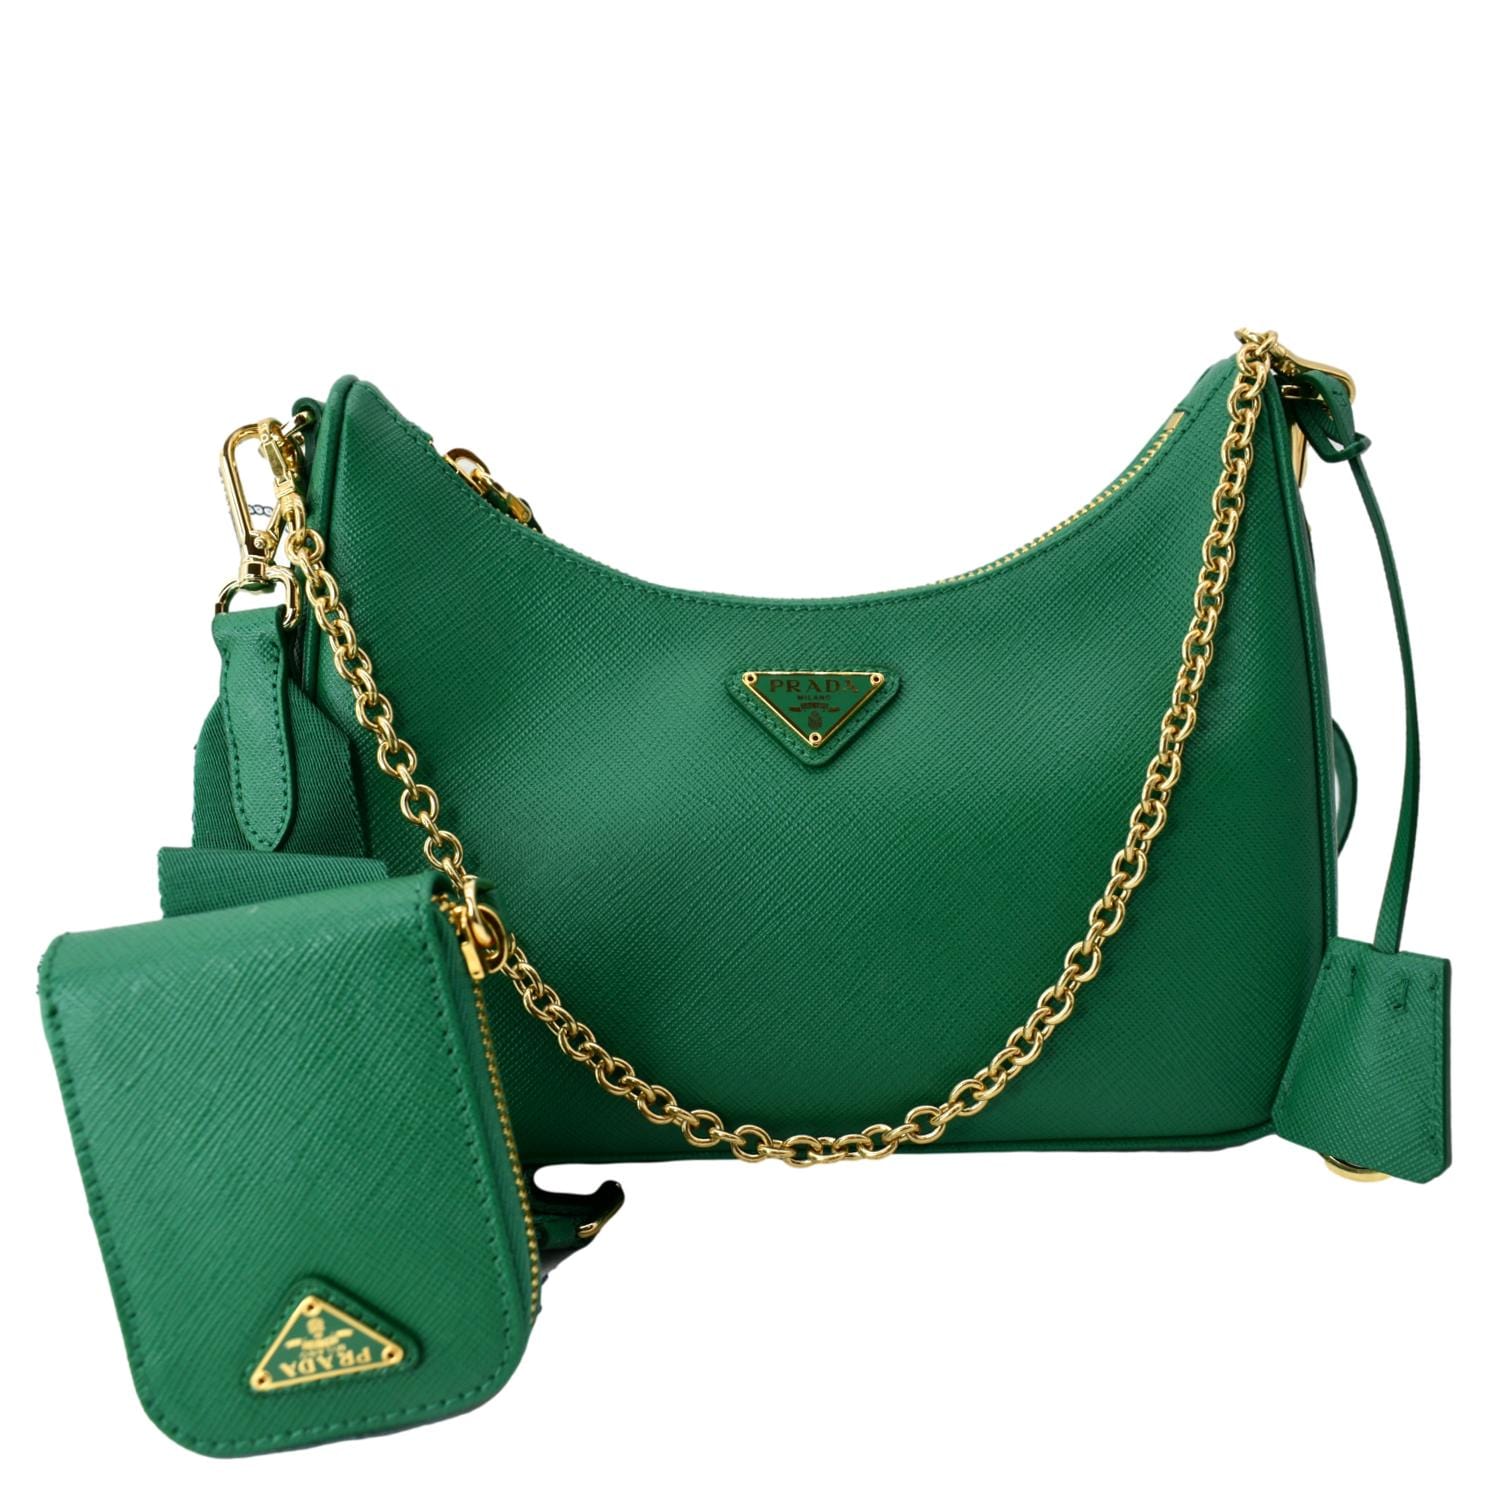 Prada Promenade Saffiano Leather Bag in Green